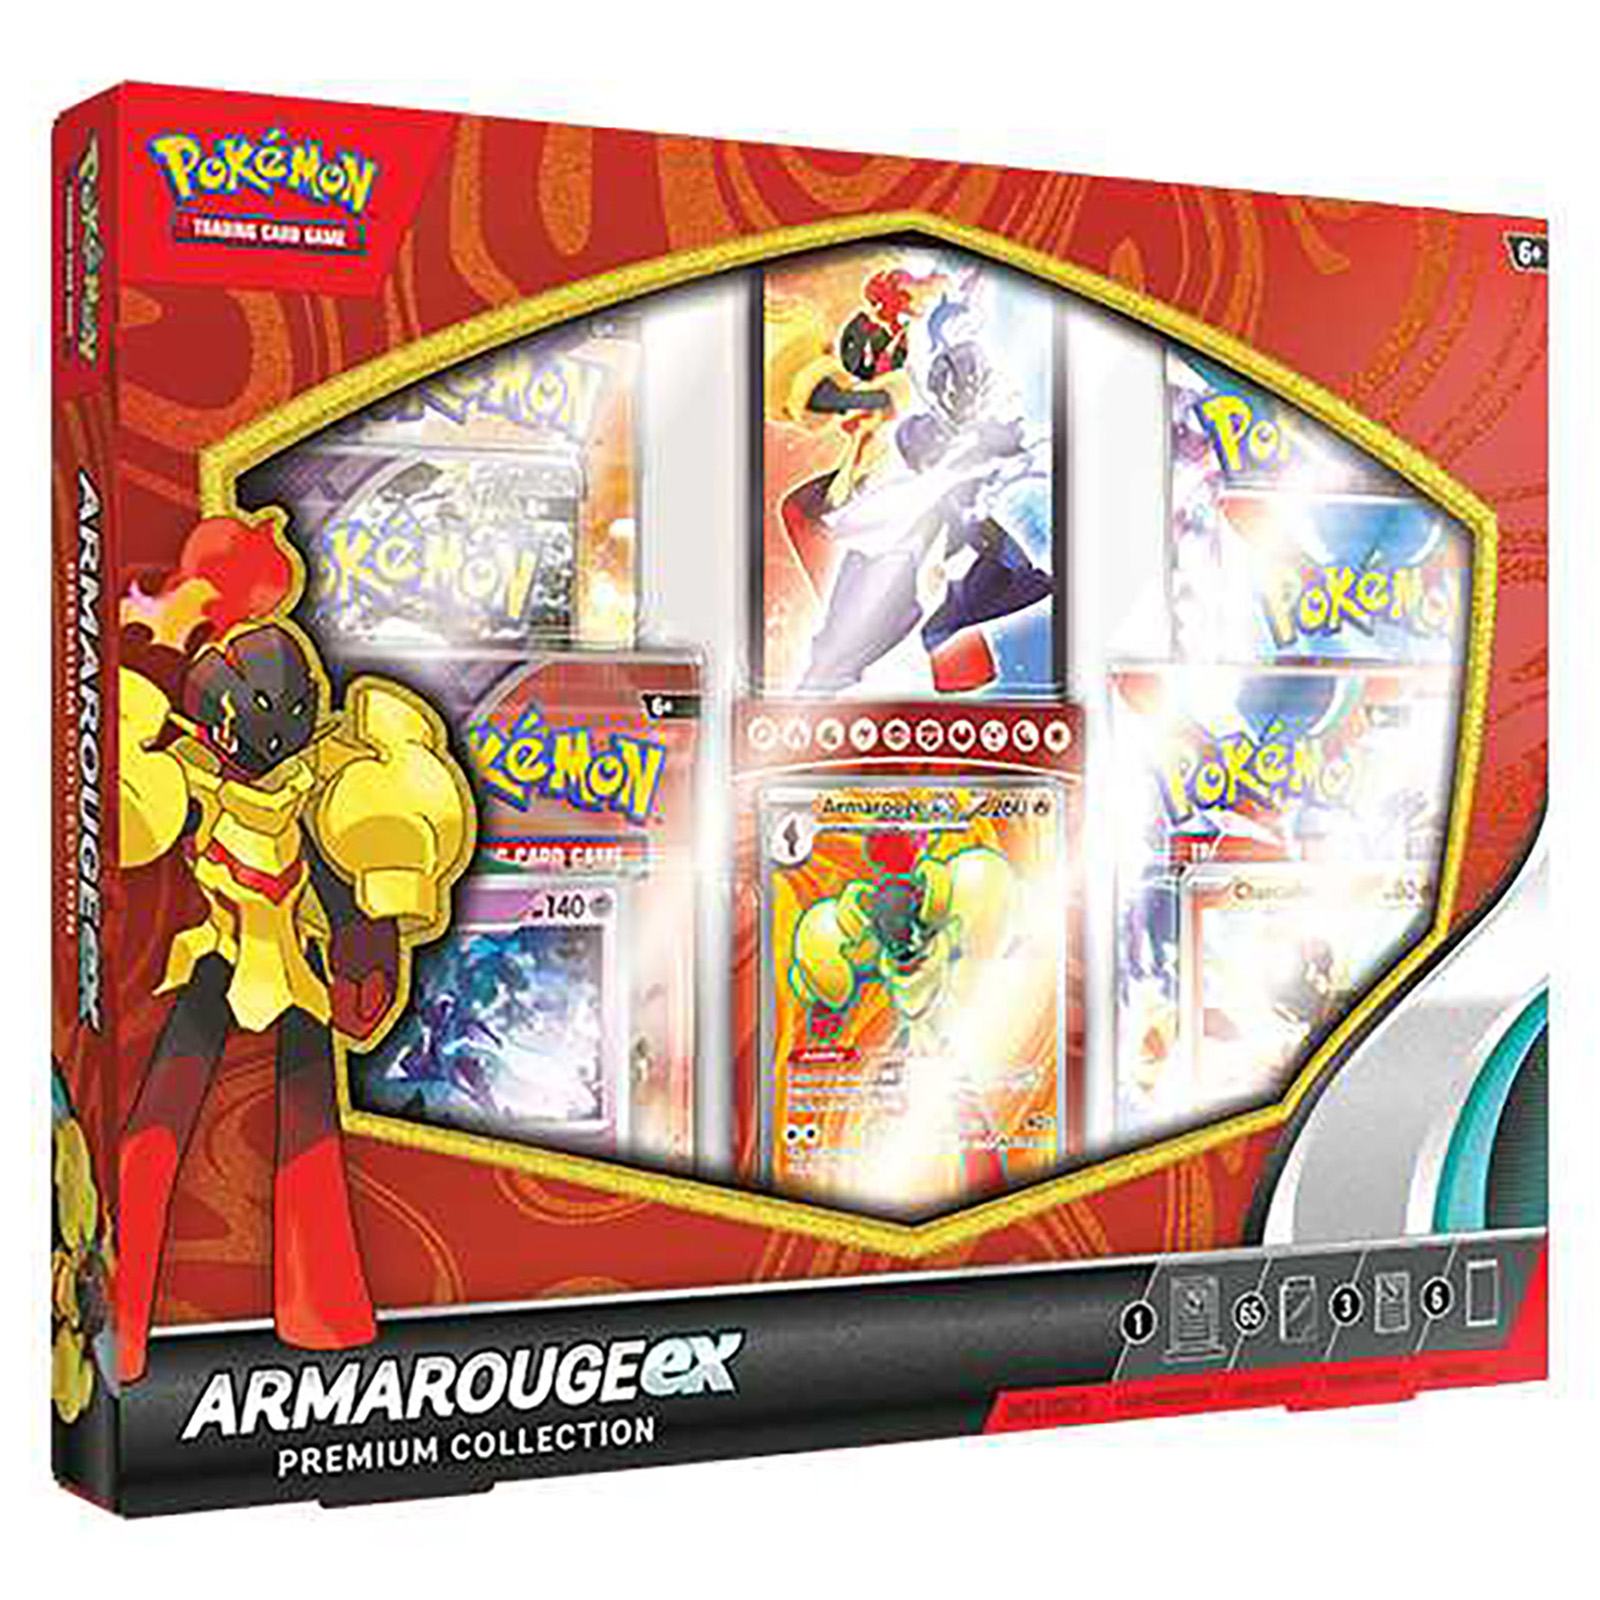 Image of Pokémon TCG: Armarouge ex Premium Collection